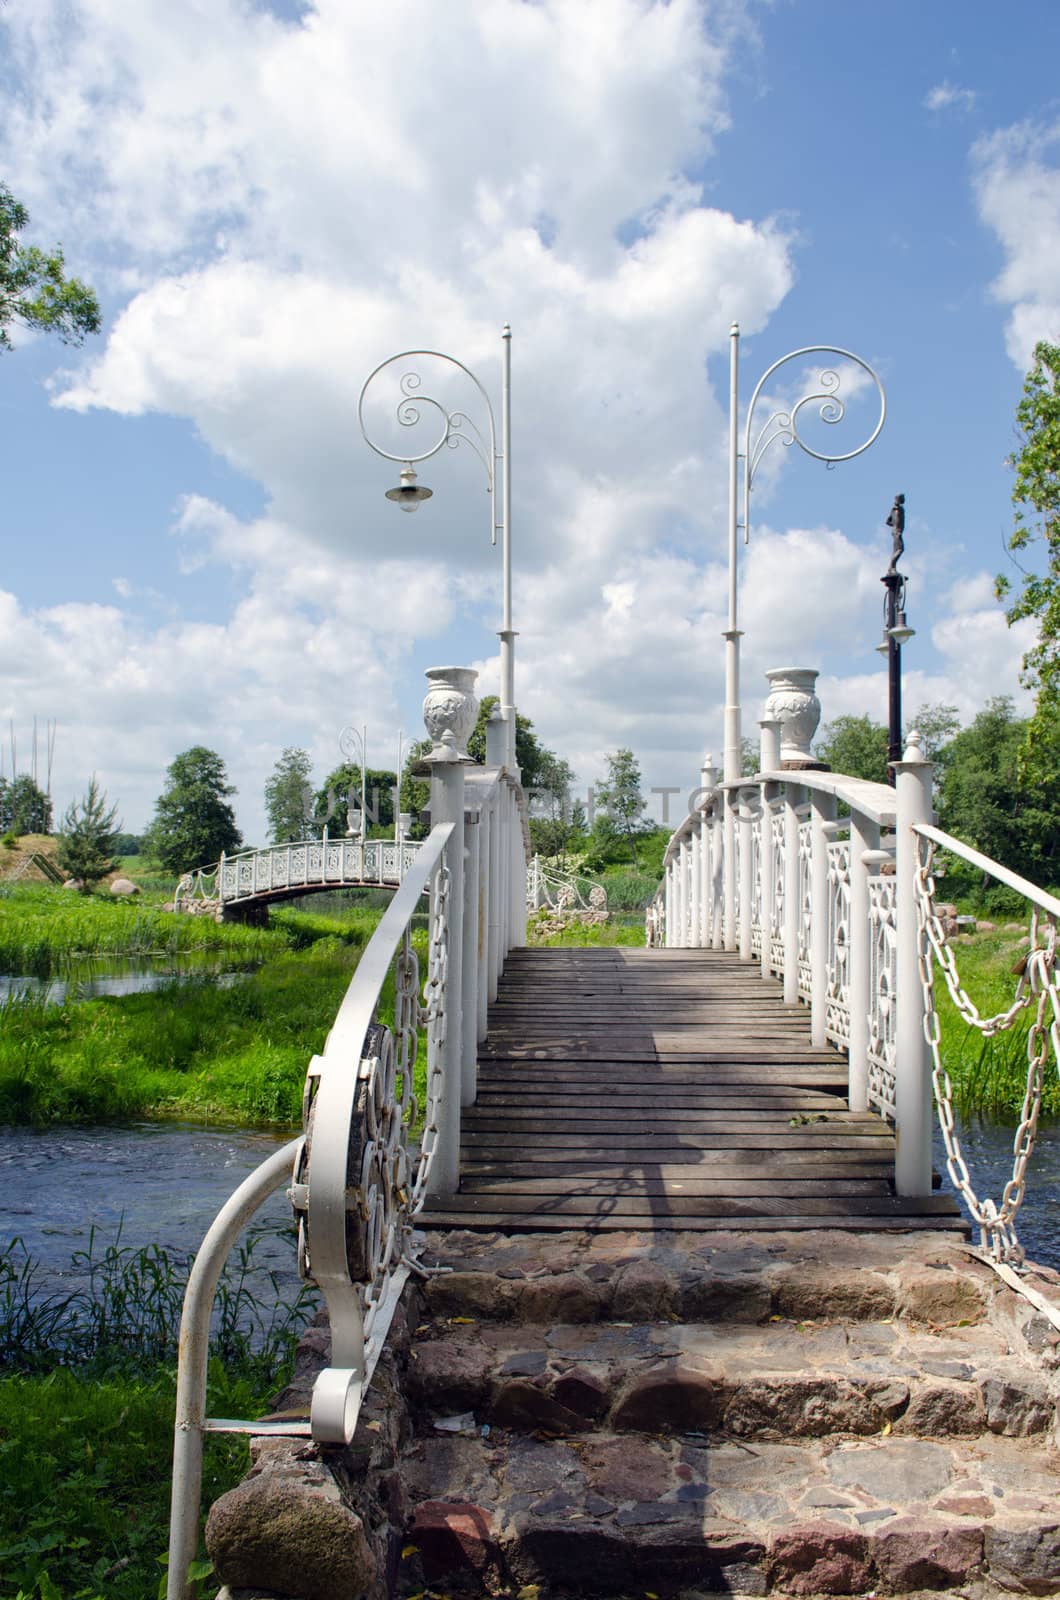 White decorative bridges through park stream and cloudy blue sky.